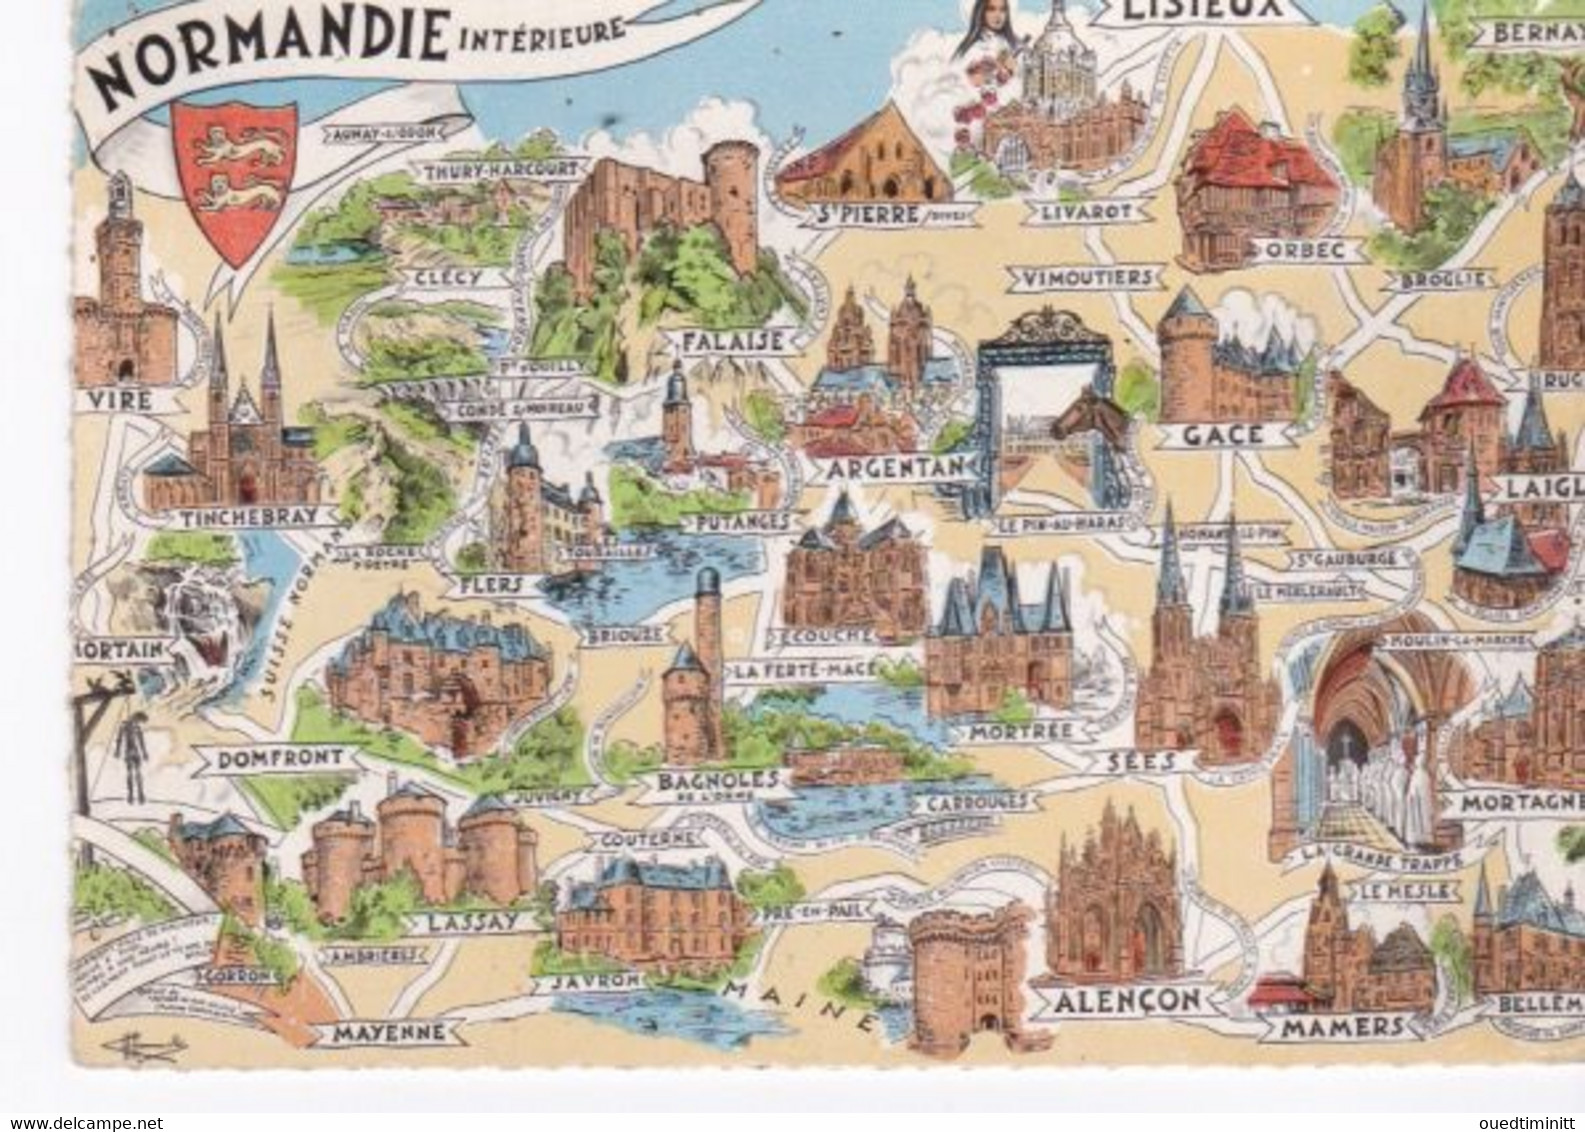 Carte Géographique De La Normandie Intérieure. Cpsm. 1968. - Maps